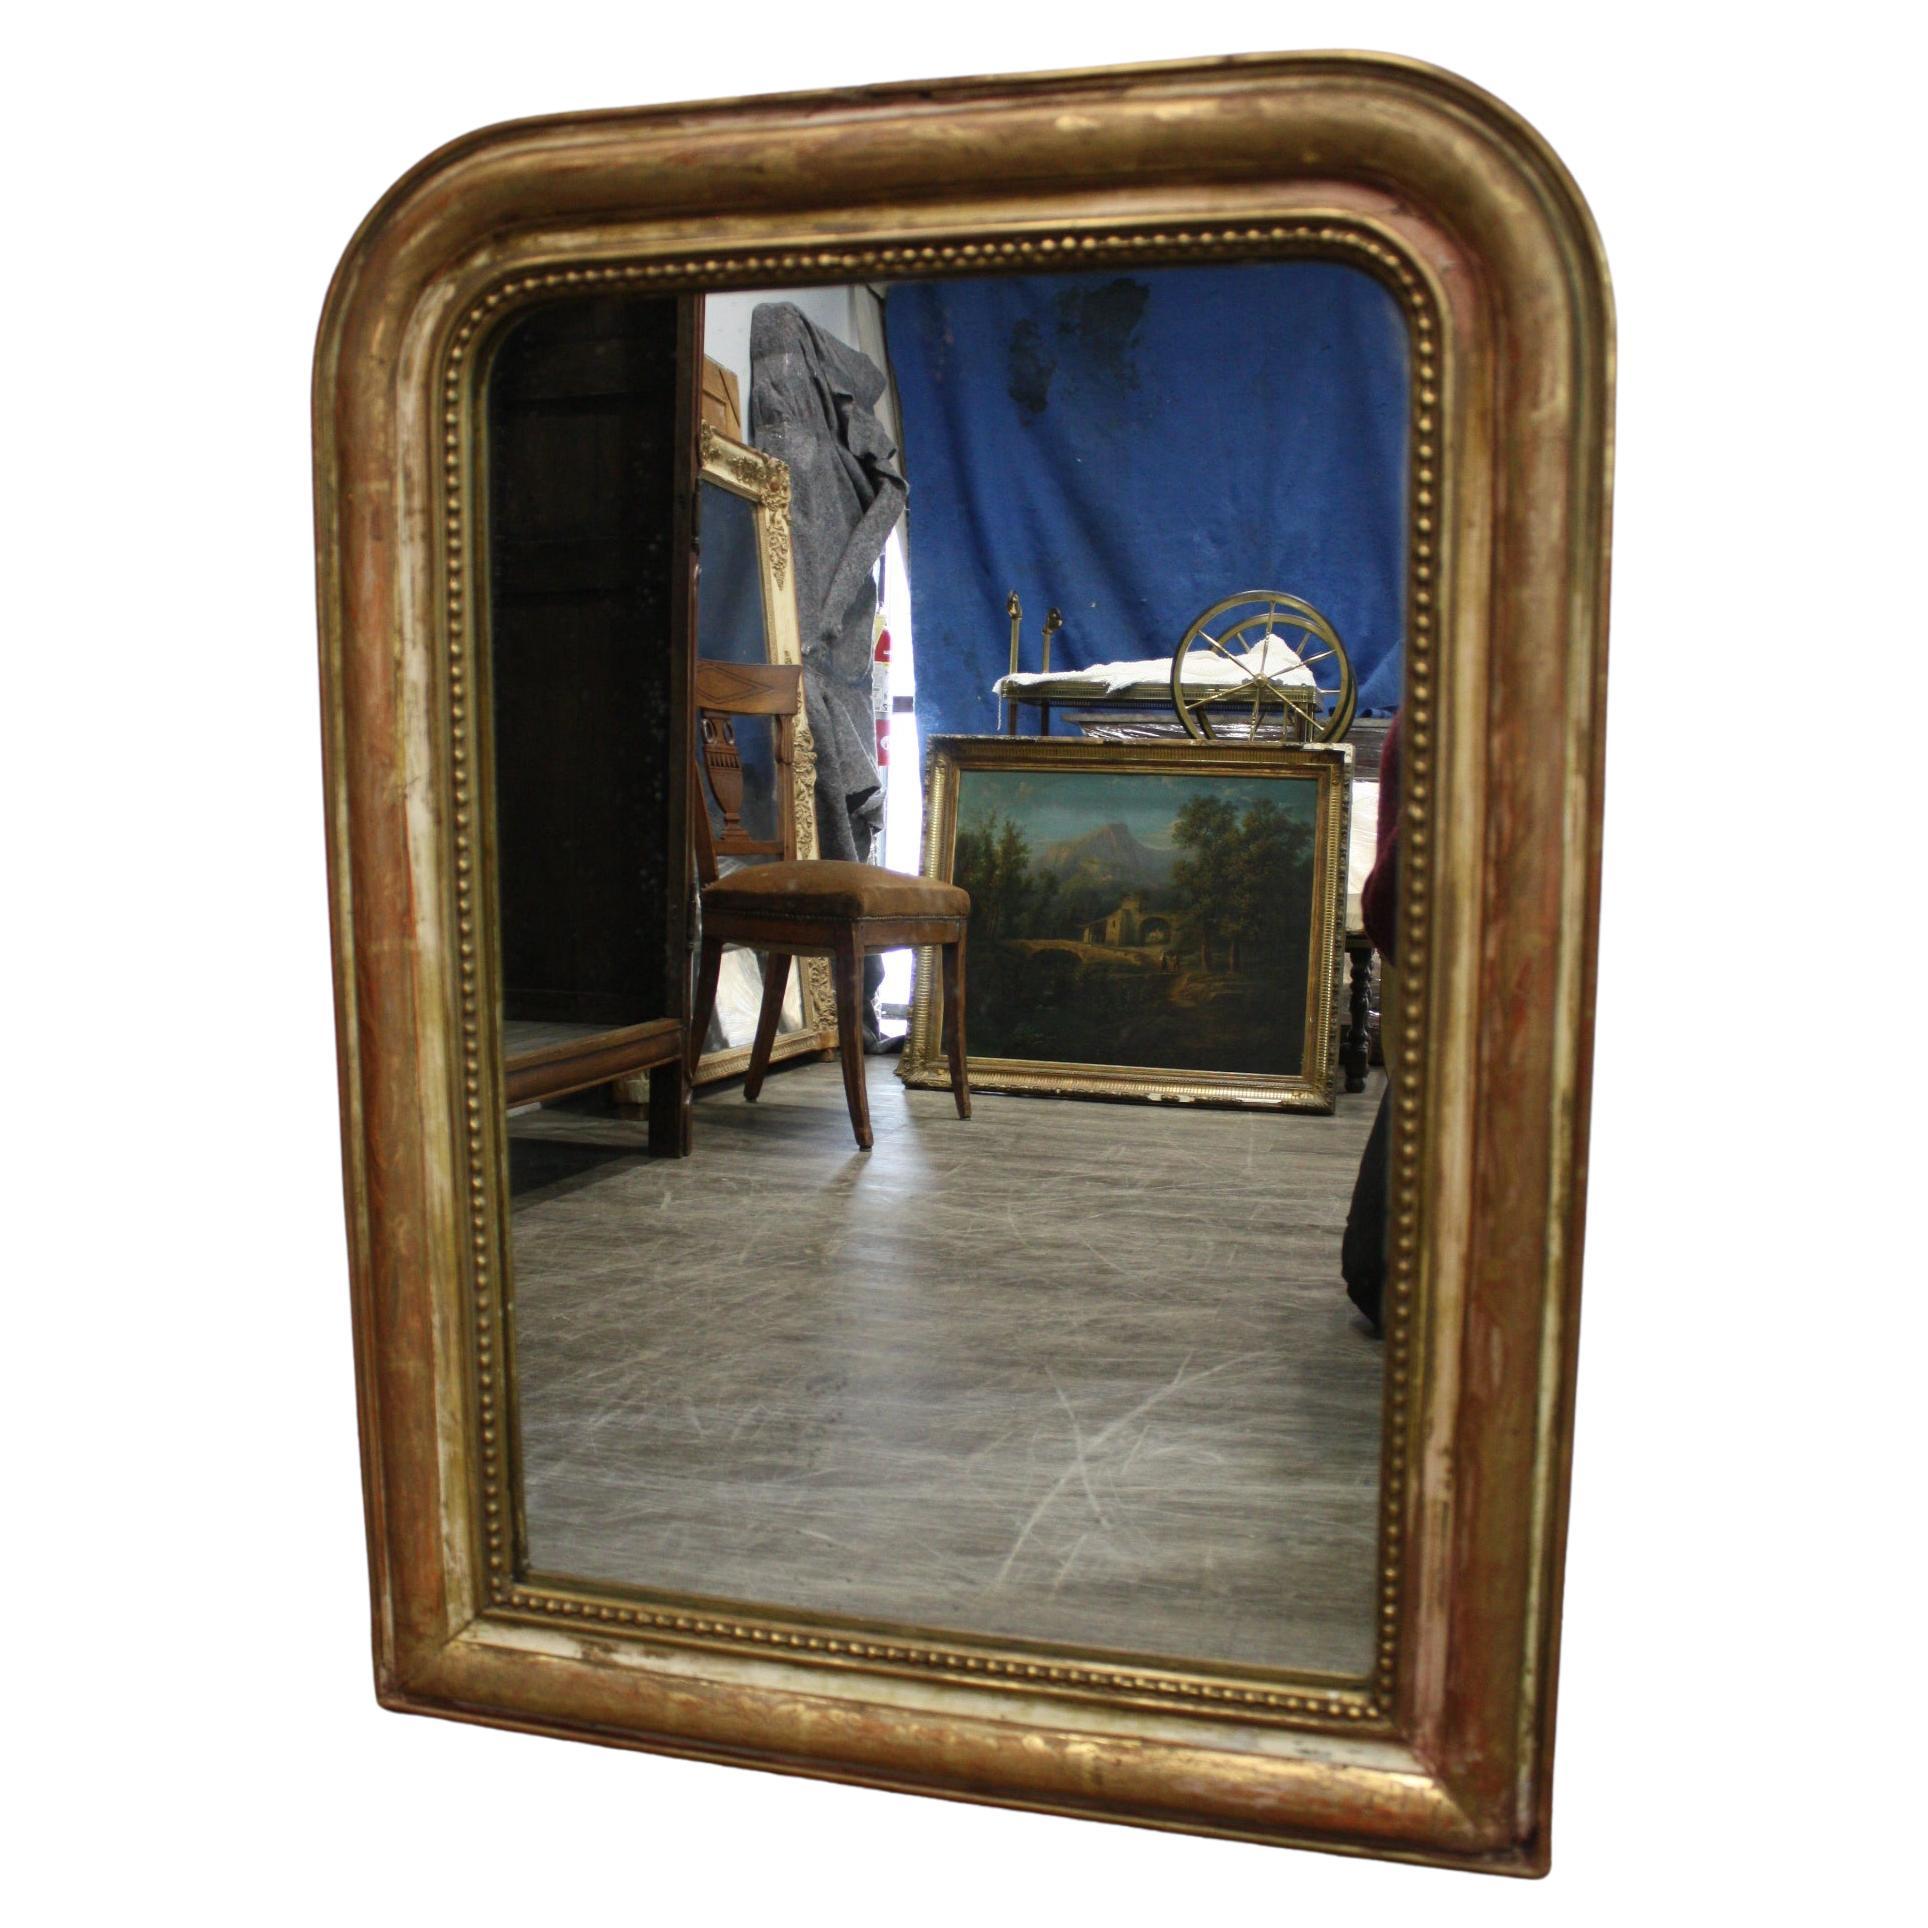 Ce miroir est recouvert de feuilles d'or, il est partiellement décapé et le miroir en verre présente quelques usures.  taches dues à l'âge.